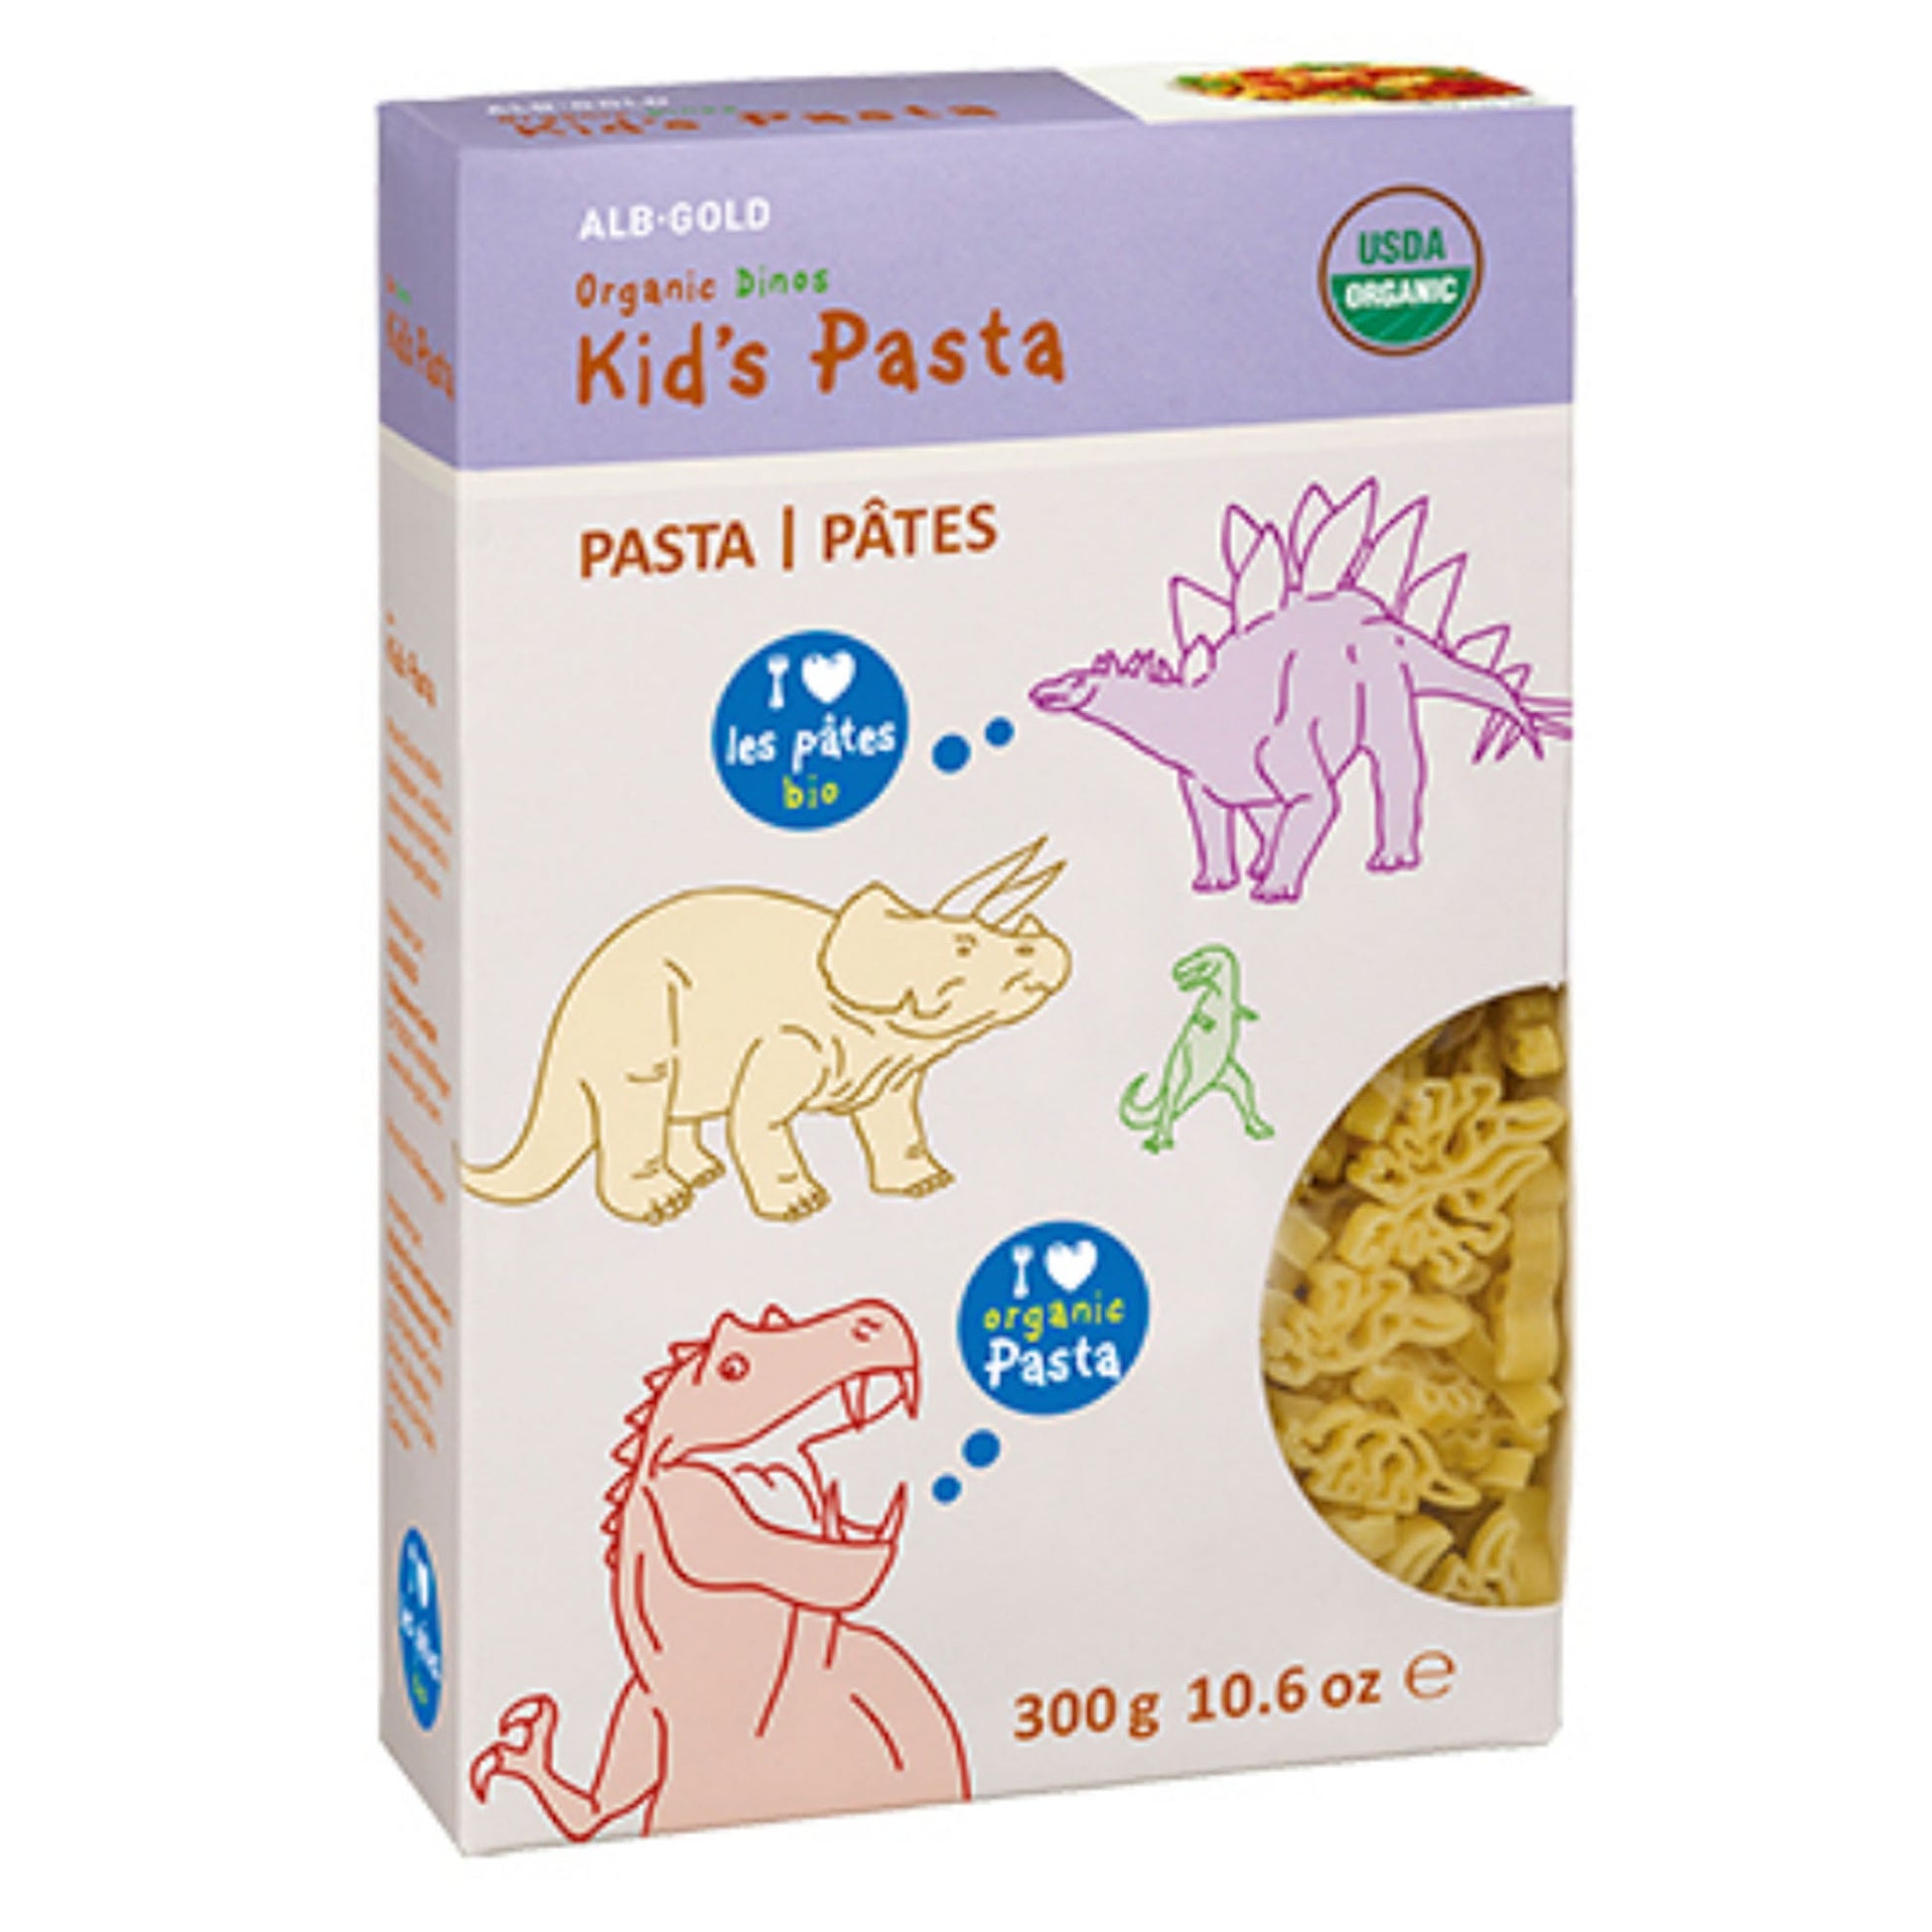 Albg-Organic Kids Pasta Dinos